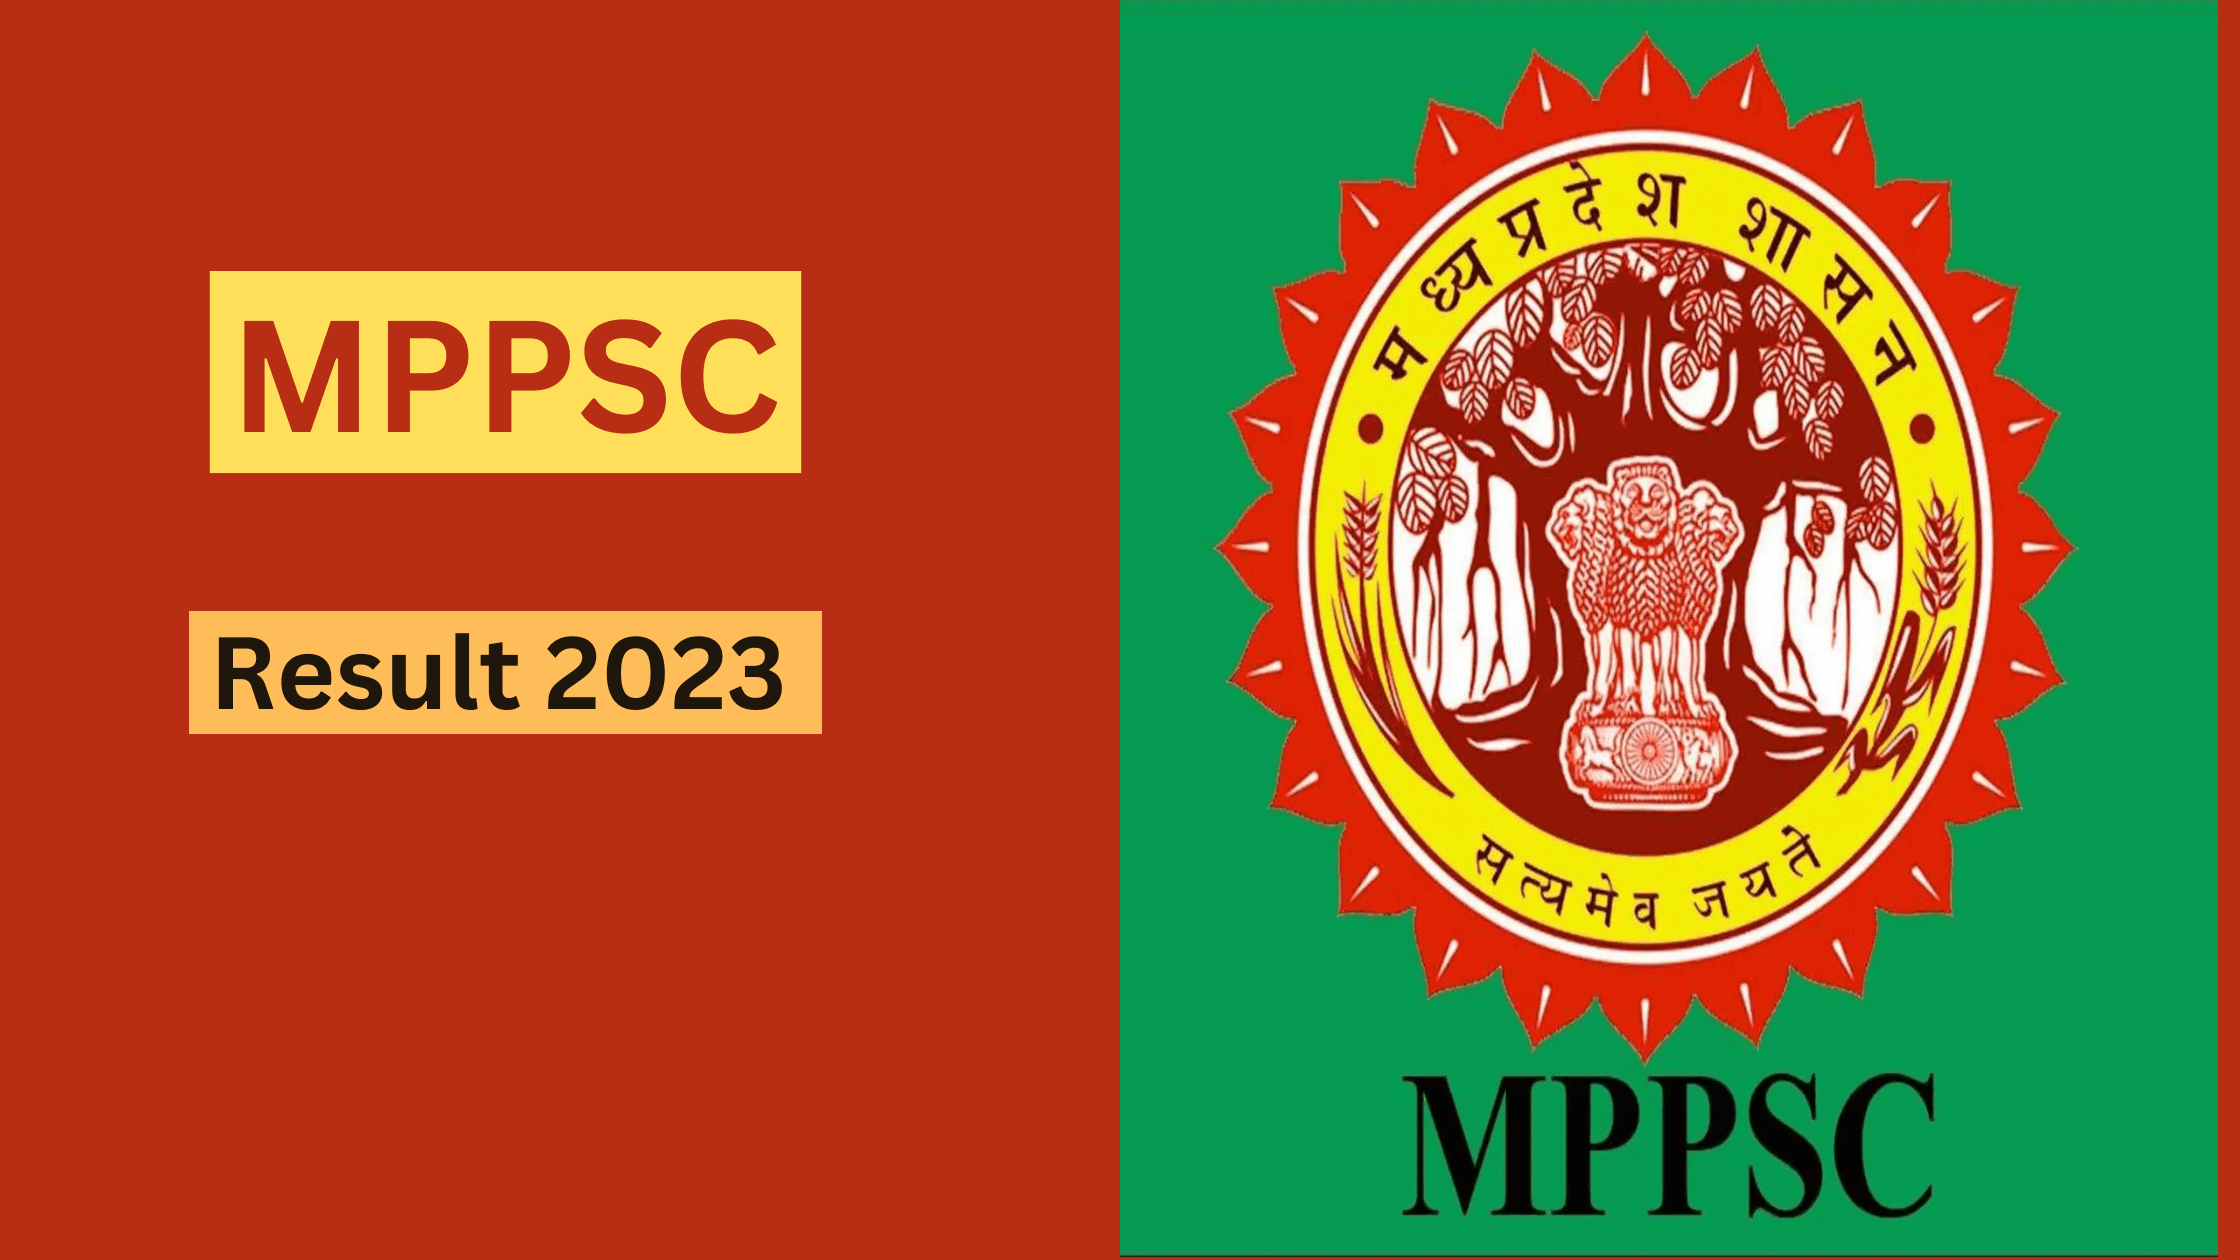 MPPSC Result 2023